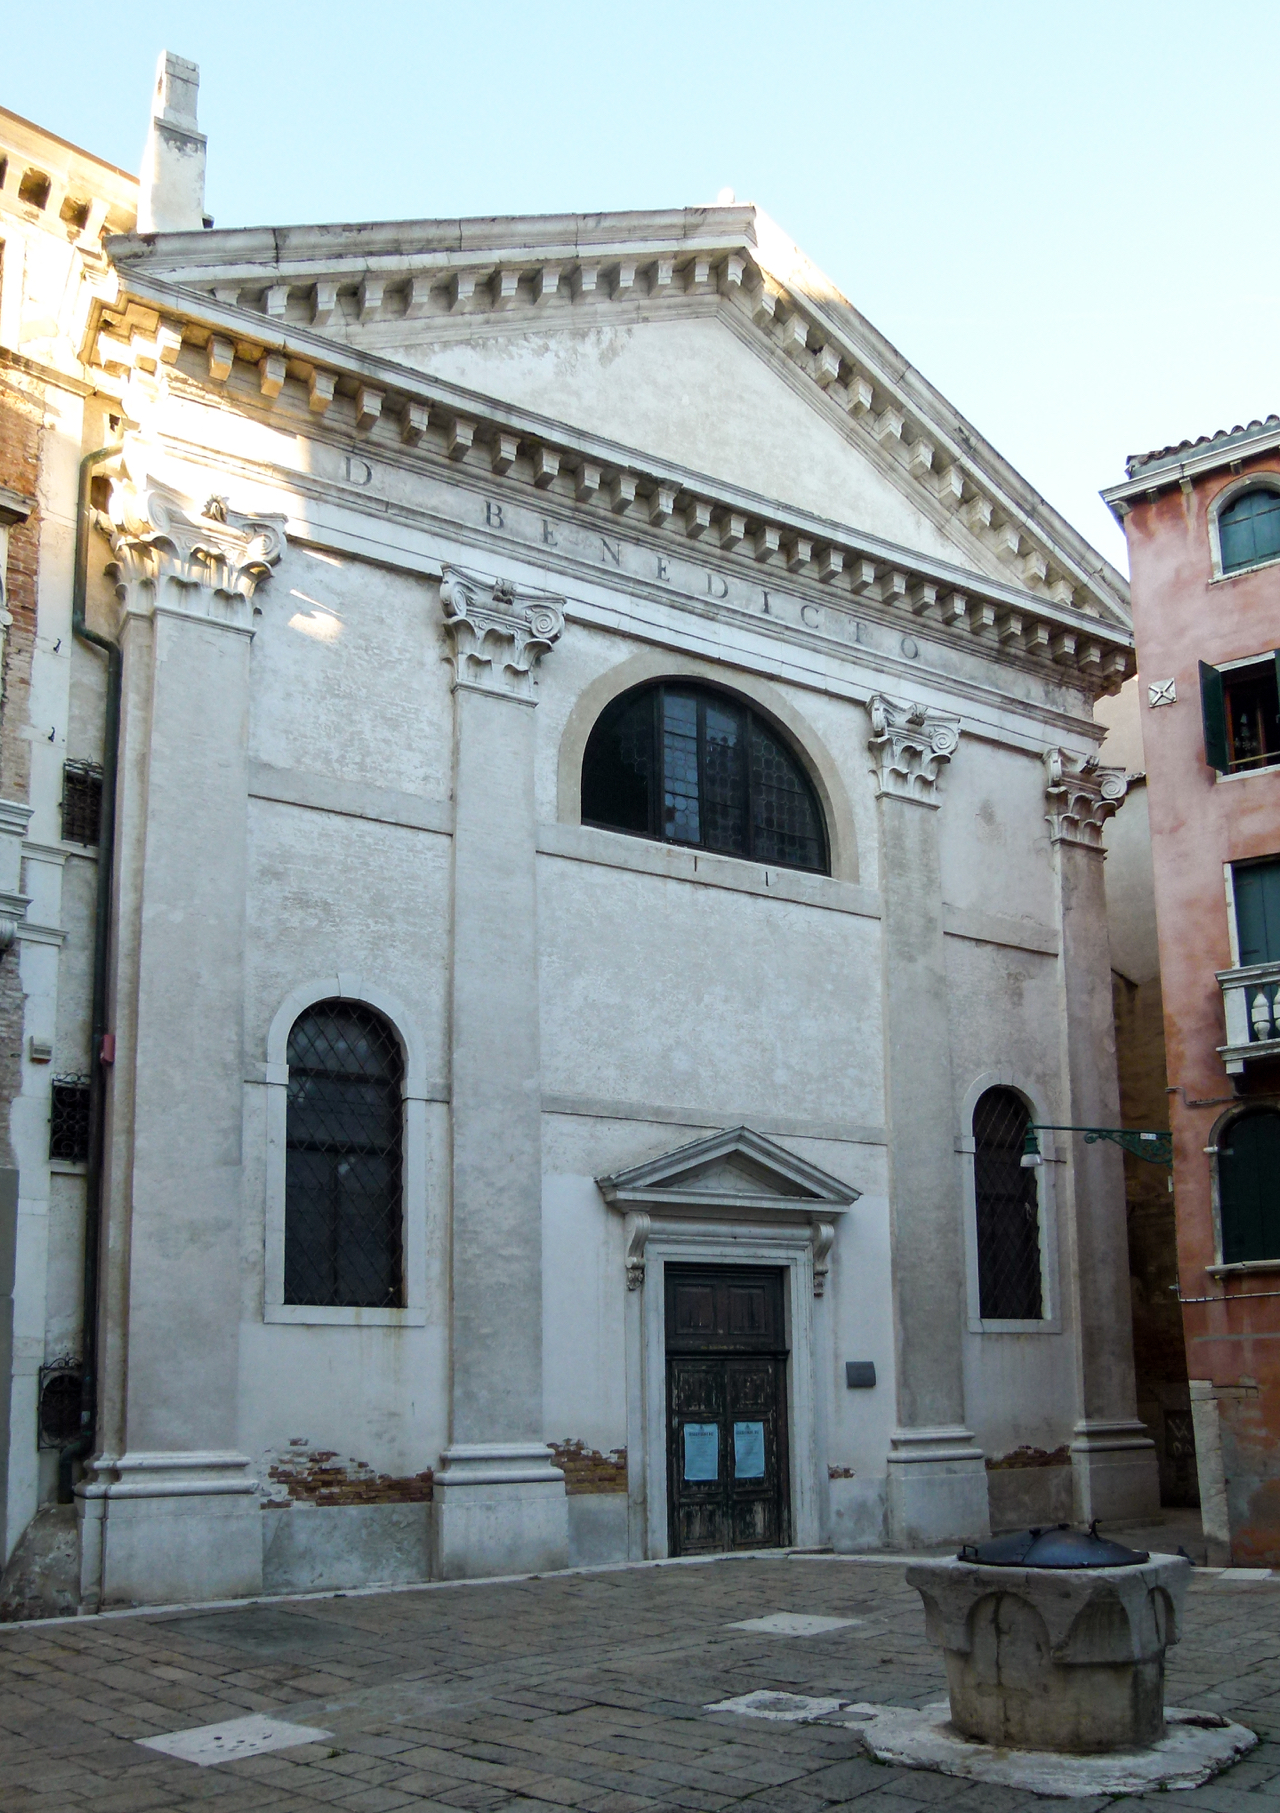 Chiesa di San Benedetto e Scolastica detta "S. Beneto" (chiesa, vicariale) - Venezia (VE) 